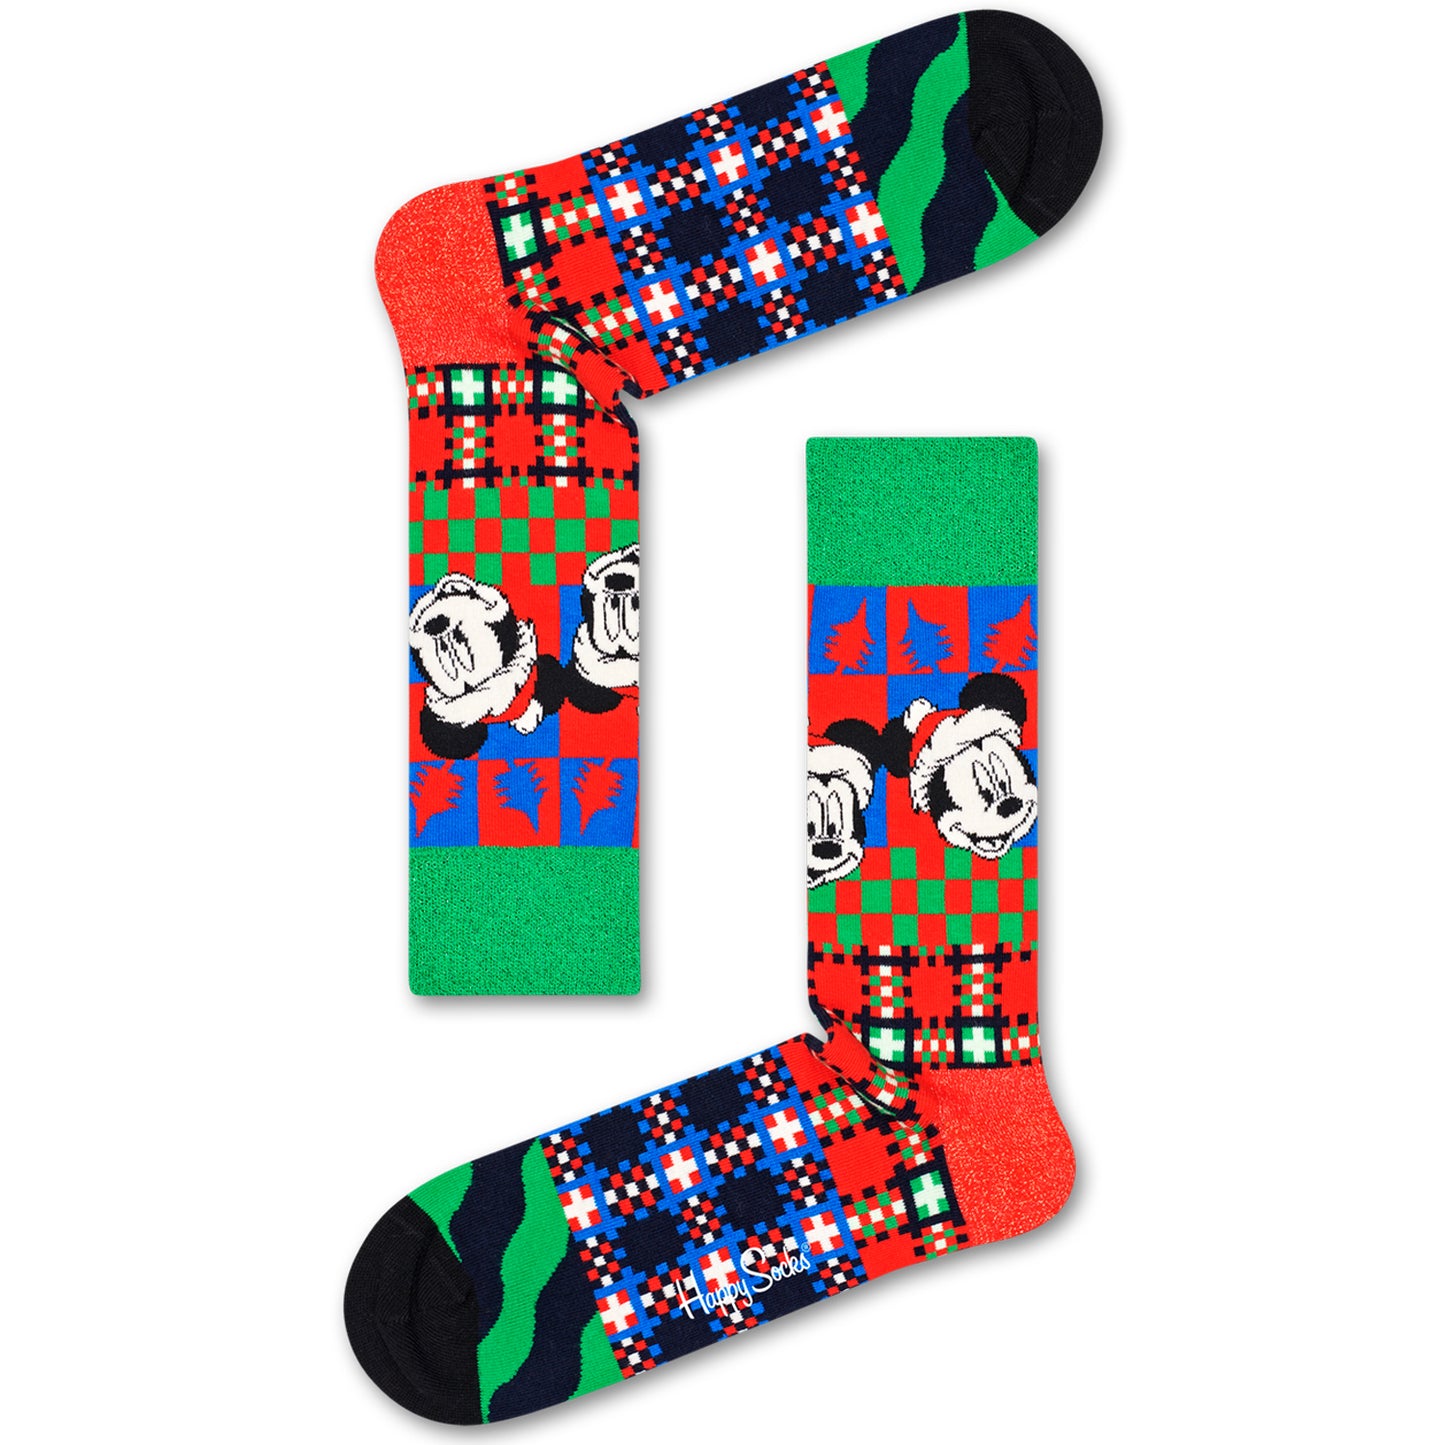 Happy Socks x Disney Men's Crew Socks - 'Tis the Season